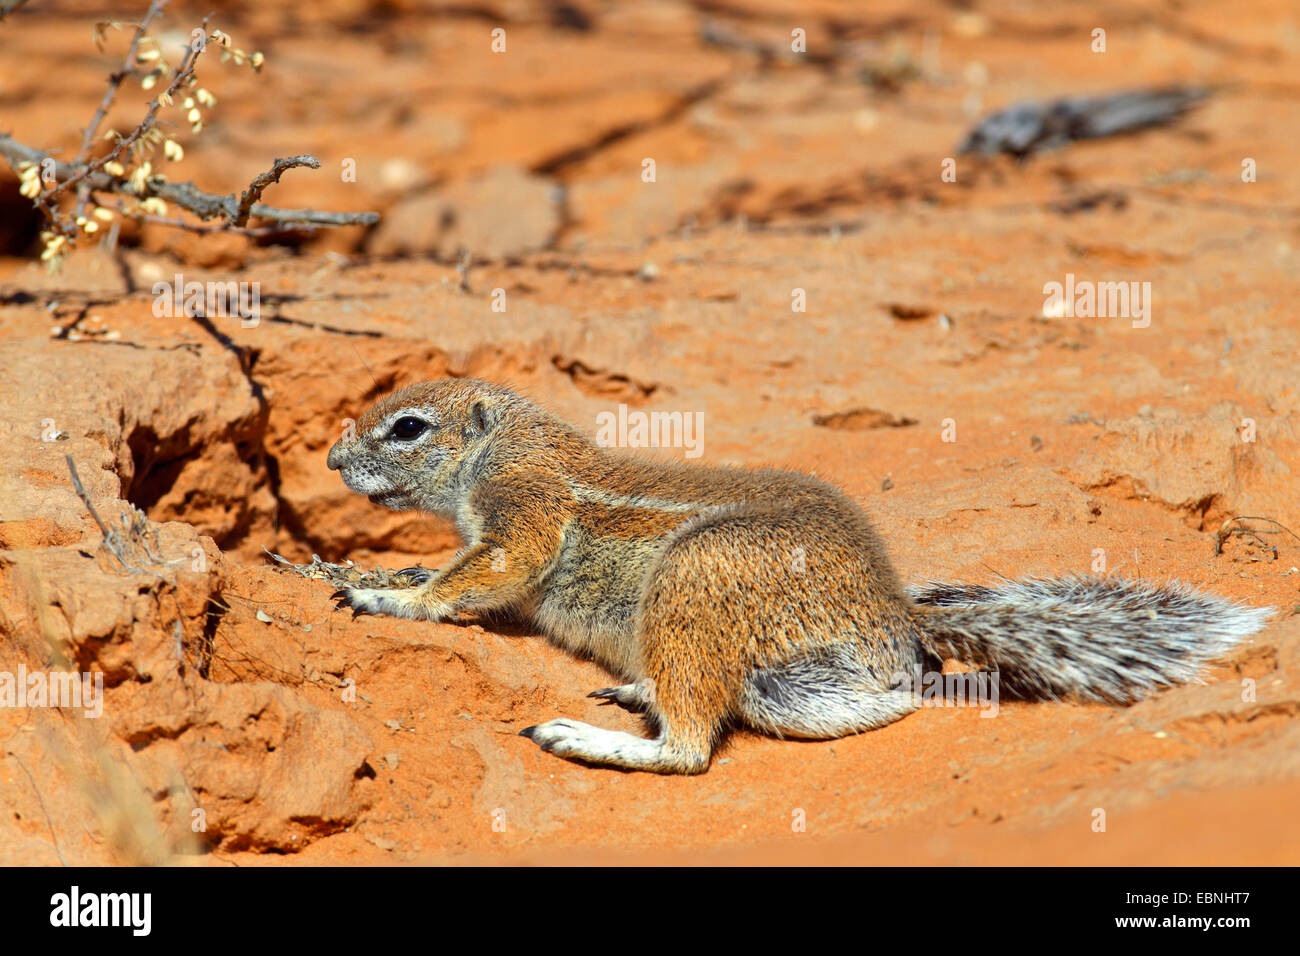 Sudafricano scoiattolo di terra, terra del capo scoiattolo (Geosciurus inauris, Xerus inauris), femmina seduta nella sabbia di fronte al den, Sud Africa, Augrabies Falls National Park Foto Stock